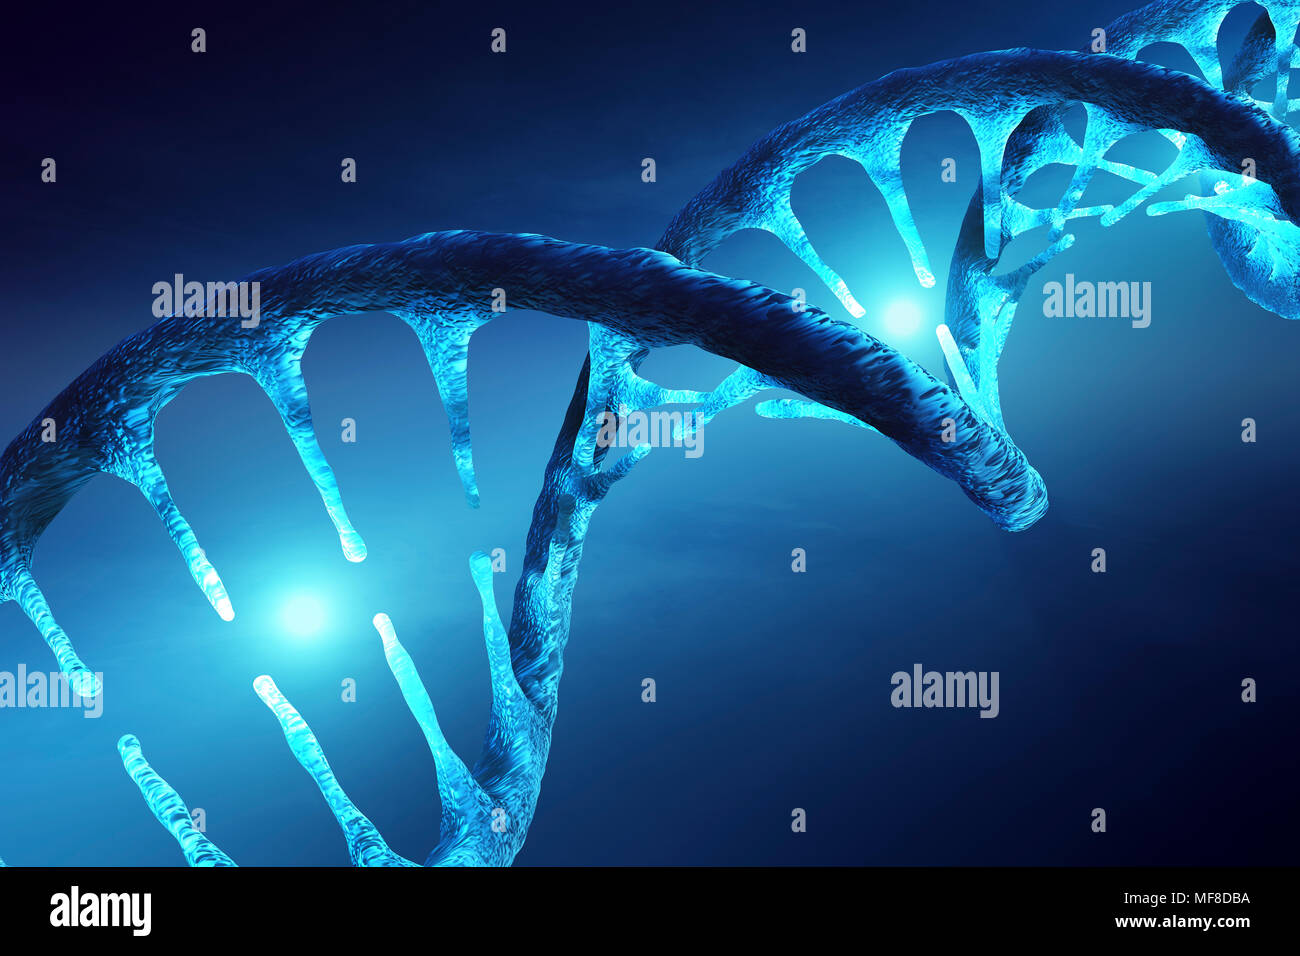 Imagen conceptual de la estructura del ADN con moléculas iluminado ilustrando la alteración genética, manipulación o modificación. 3D rendering ilustraciones Foto de stock